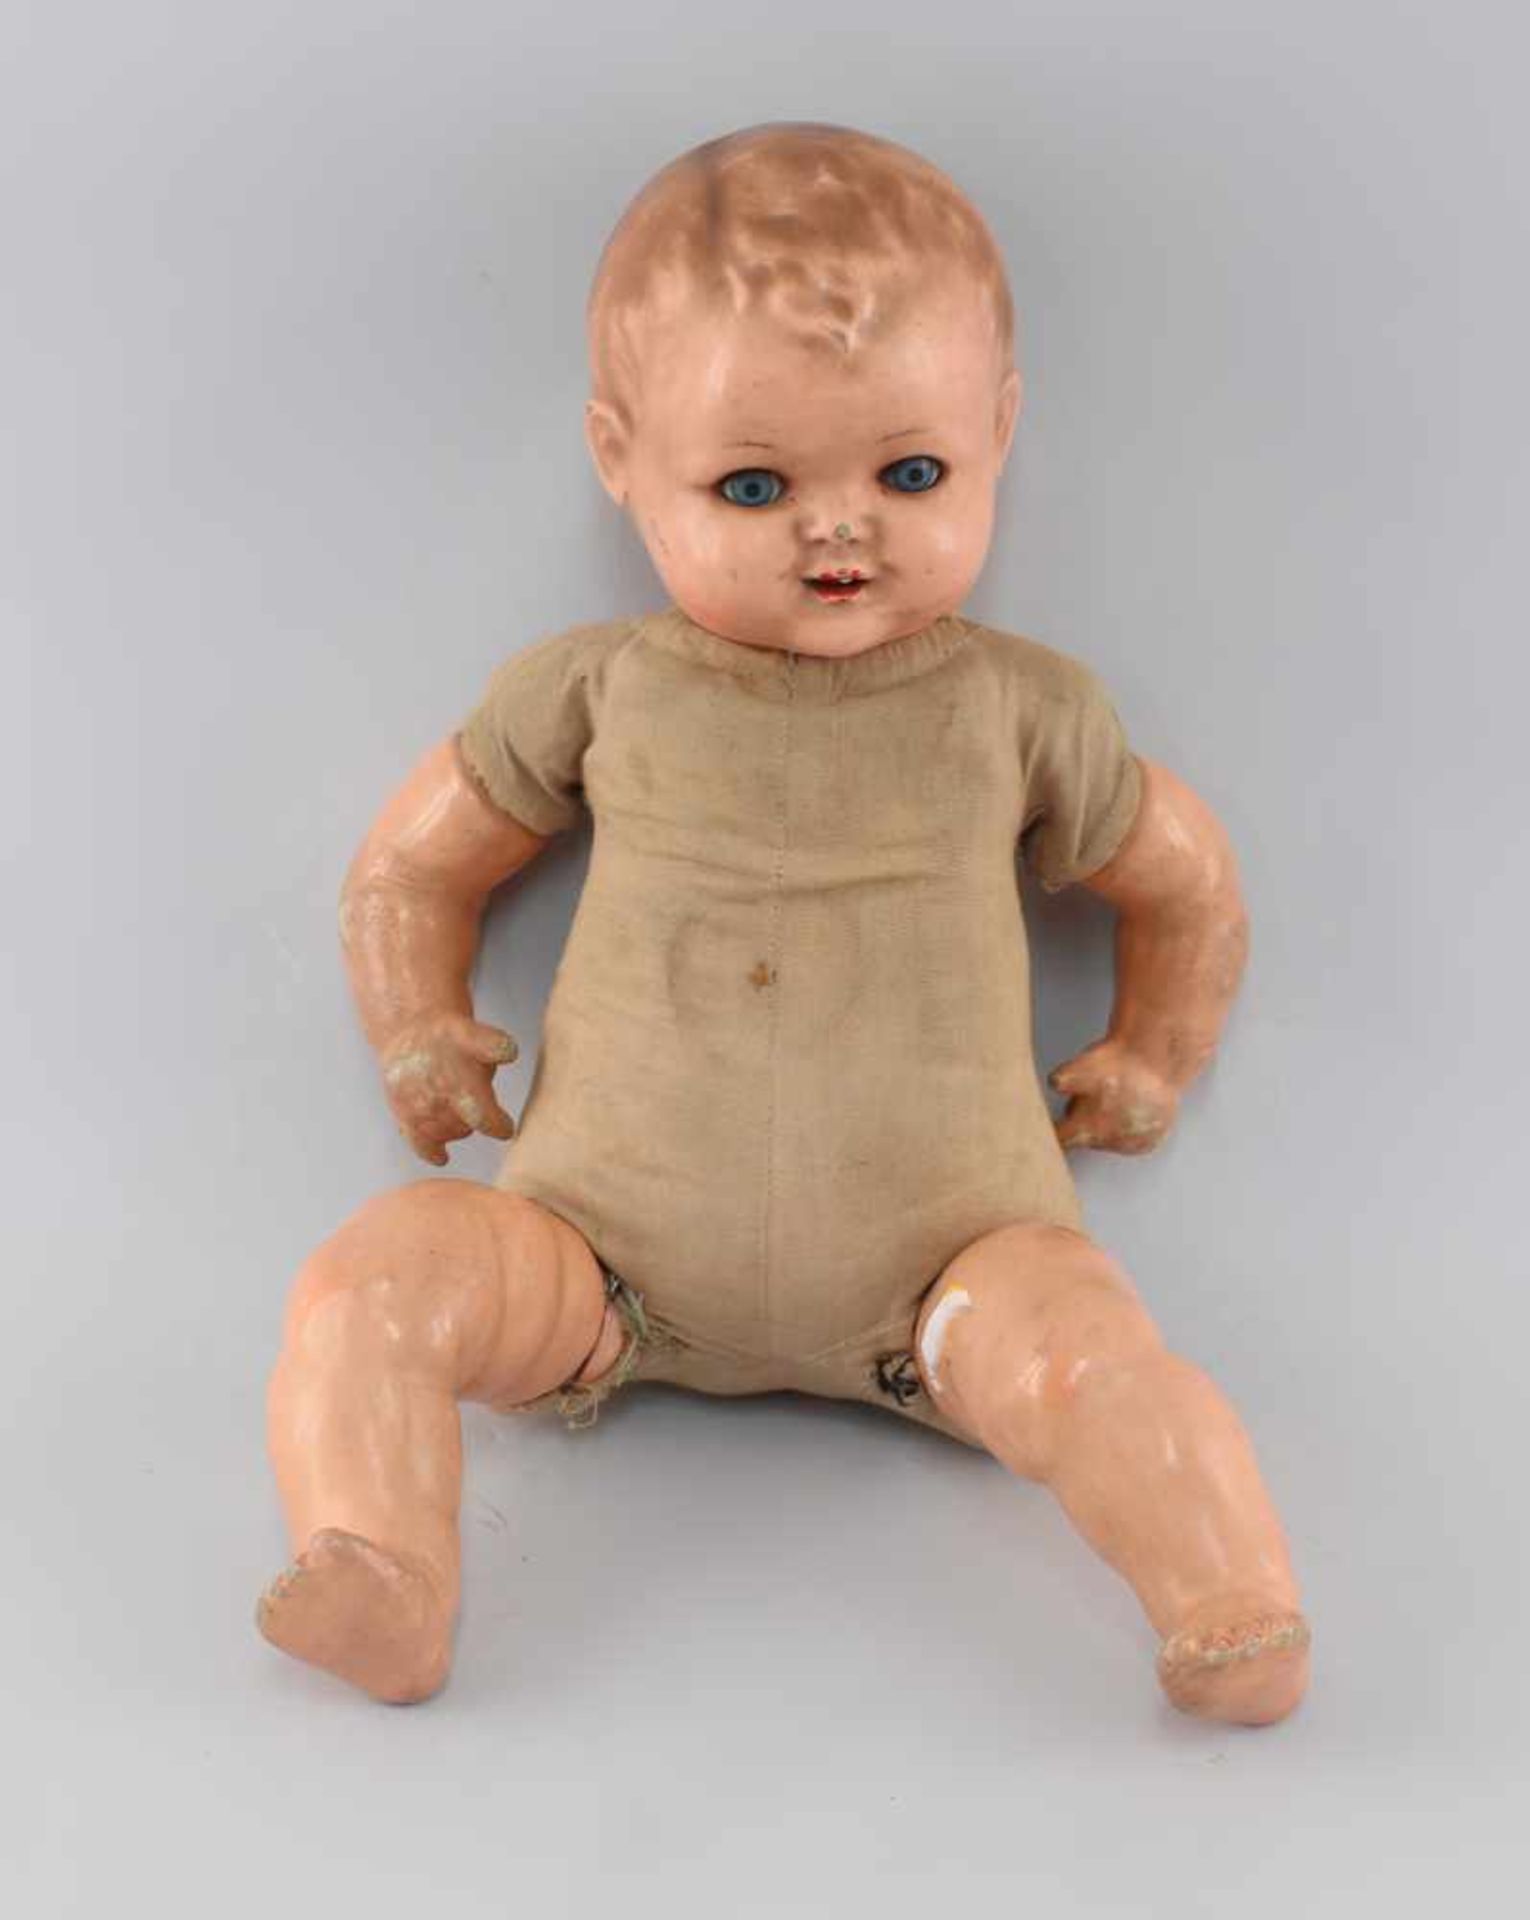 Baby-Puppe1.H. 20.Jh., Masse-Einbindekopf, Schlafaugen, offener Mund mit 1 Zähnchen, Schlafaugen, - Bild 2 aus 2